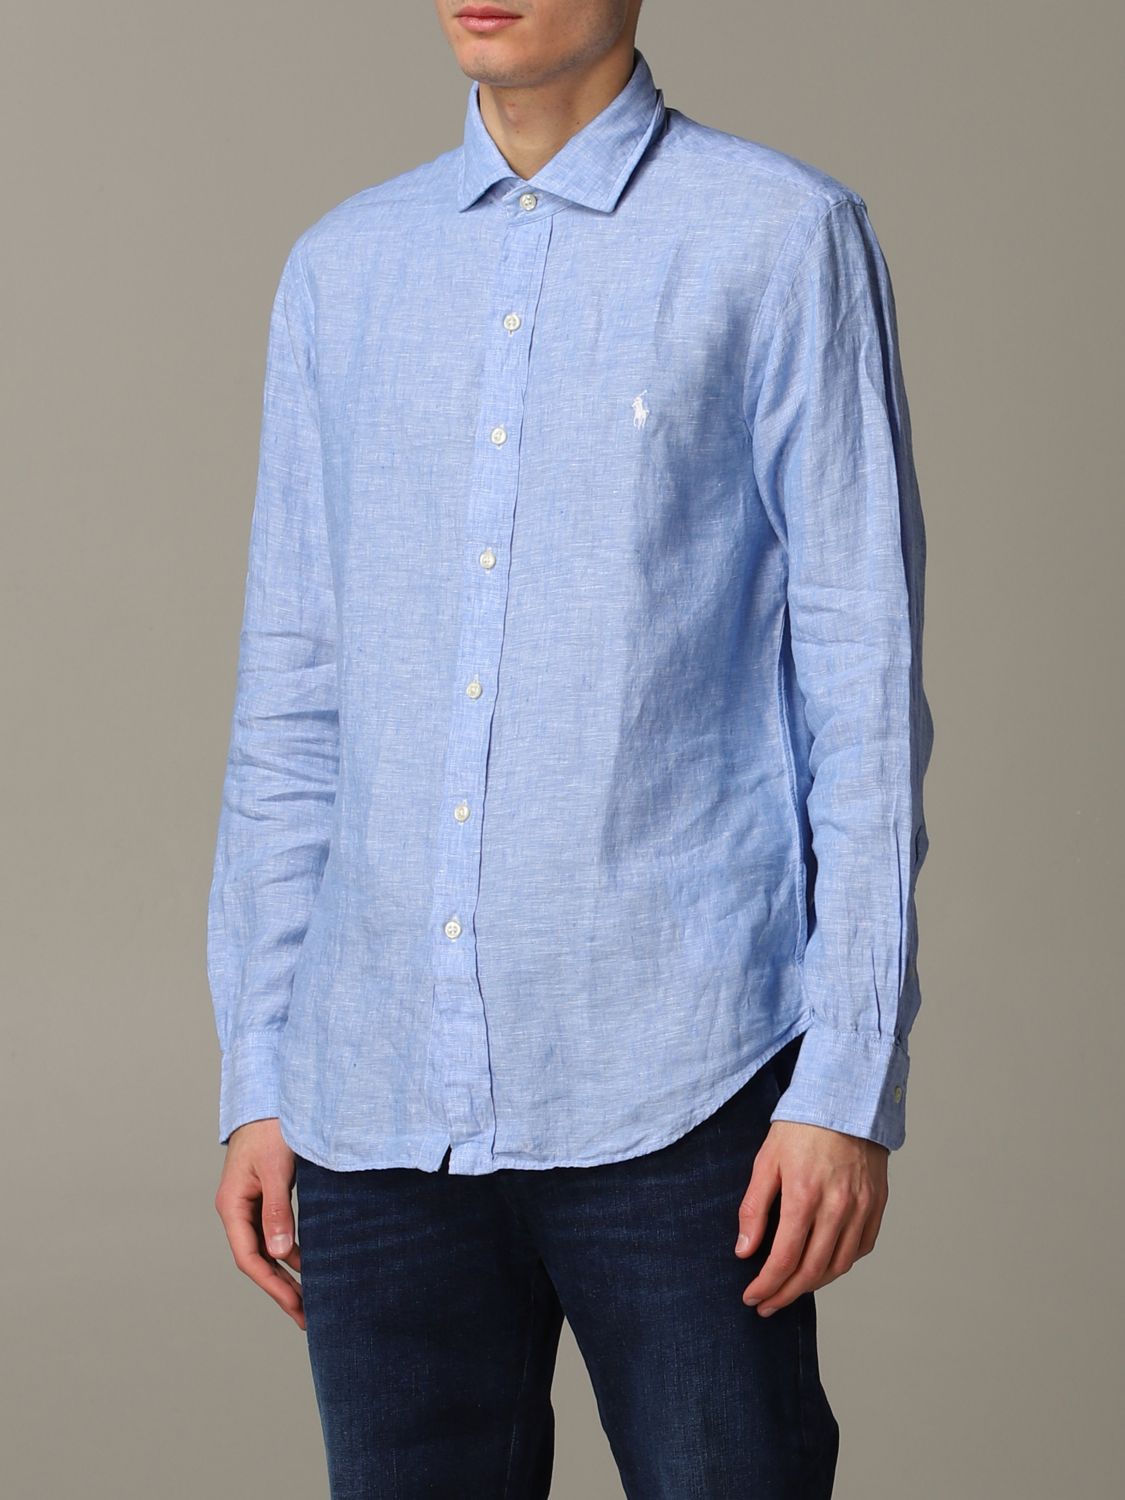 Camisa Polo Ralph Lauren: Camisa Polo Ralph Lauren para hombre azul claro 4